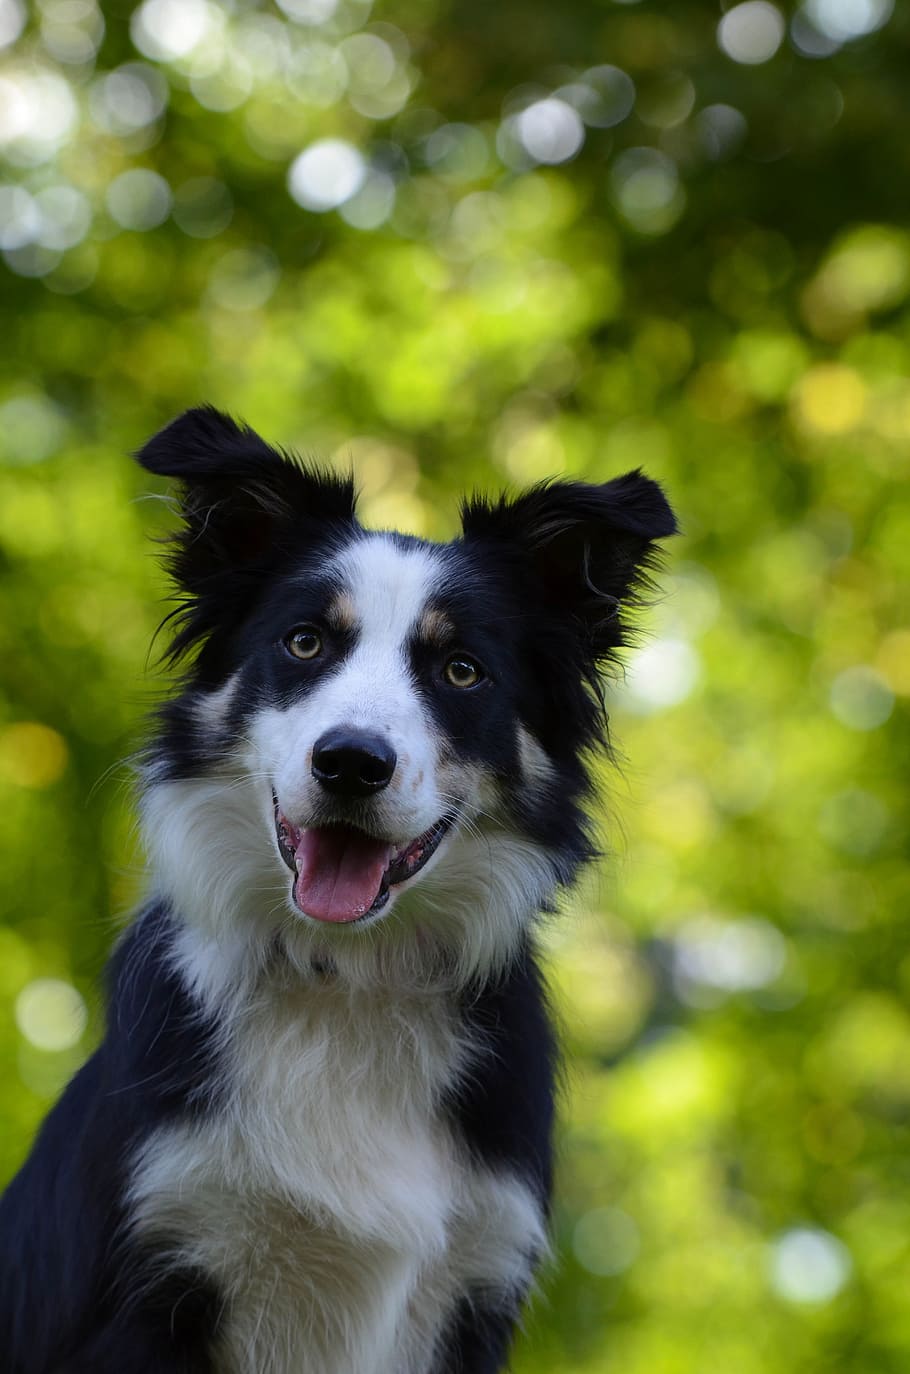 Border Collie, Retrato, Cabeza, Mascota, perro pastor británico, bokeh, perro, mascotas, animal, canino